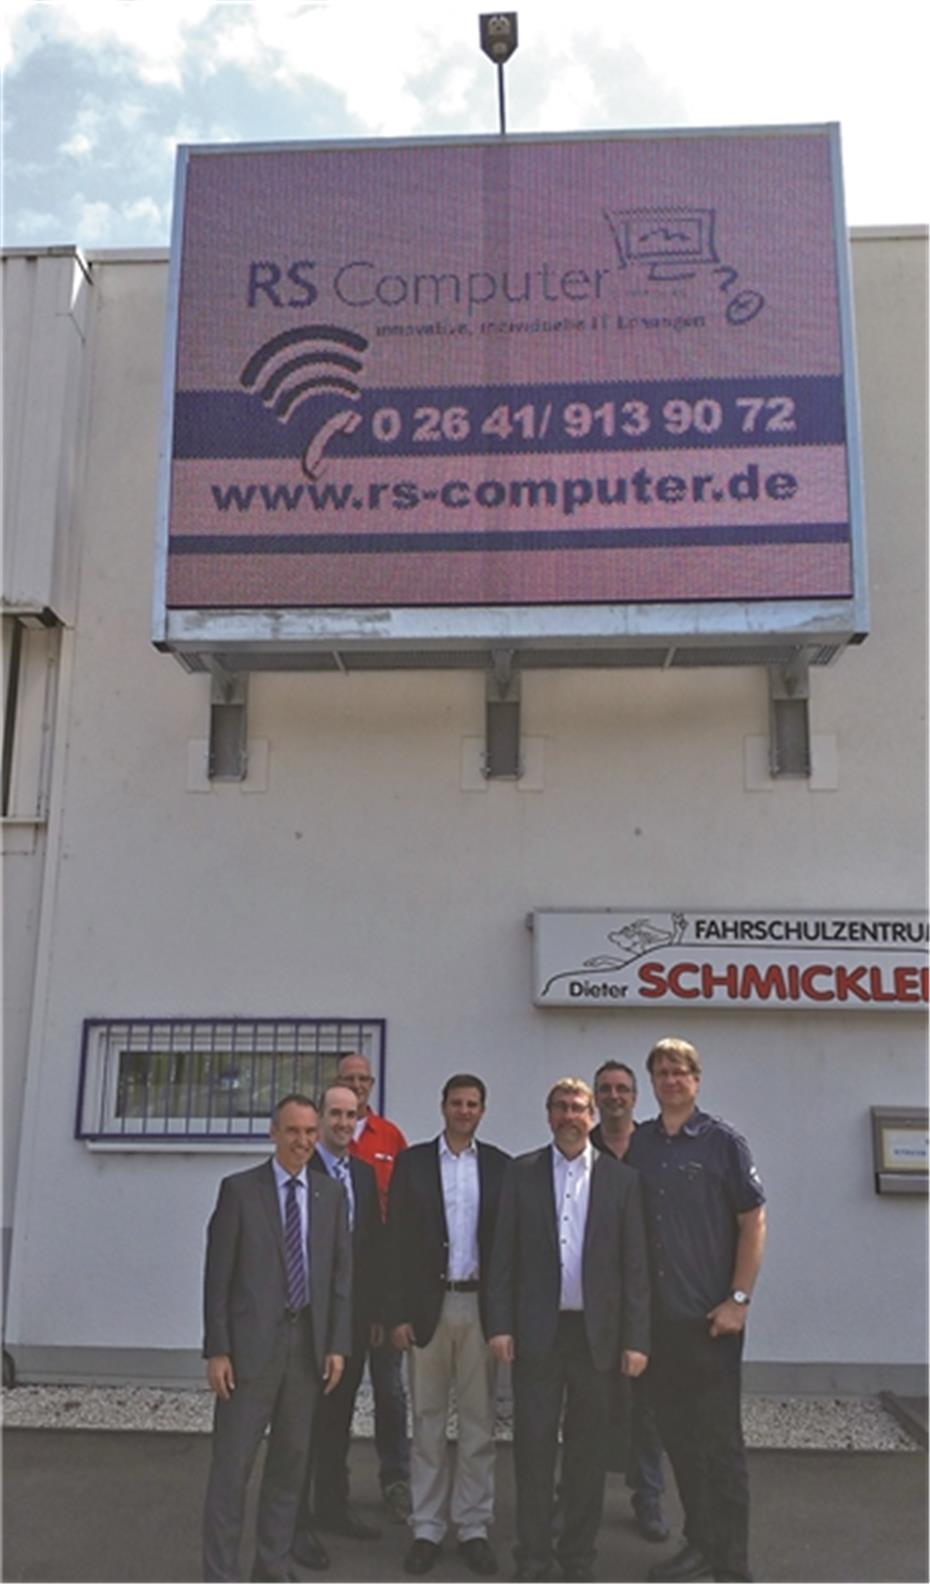 Erste Outdoor Videowall in
der Kölner Straße errichtet